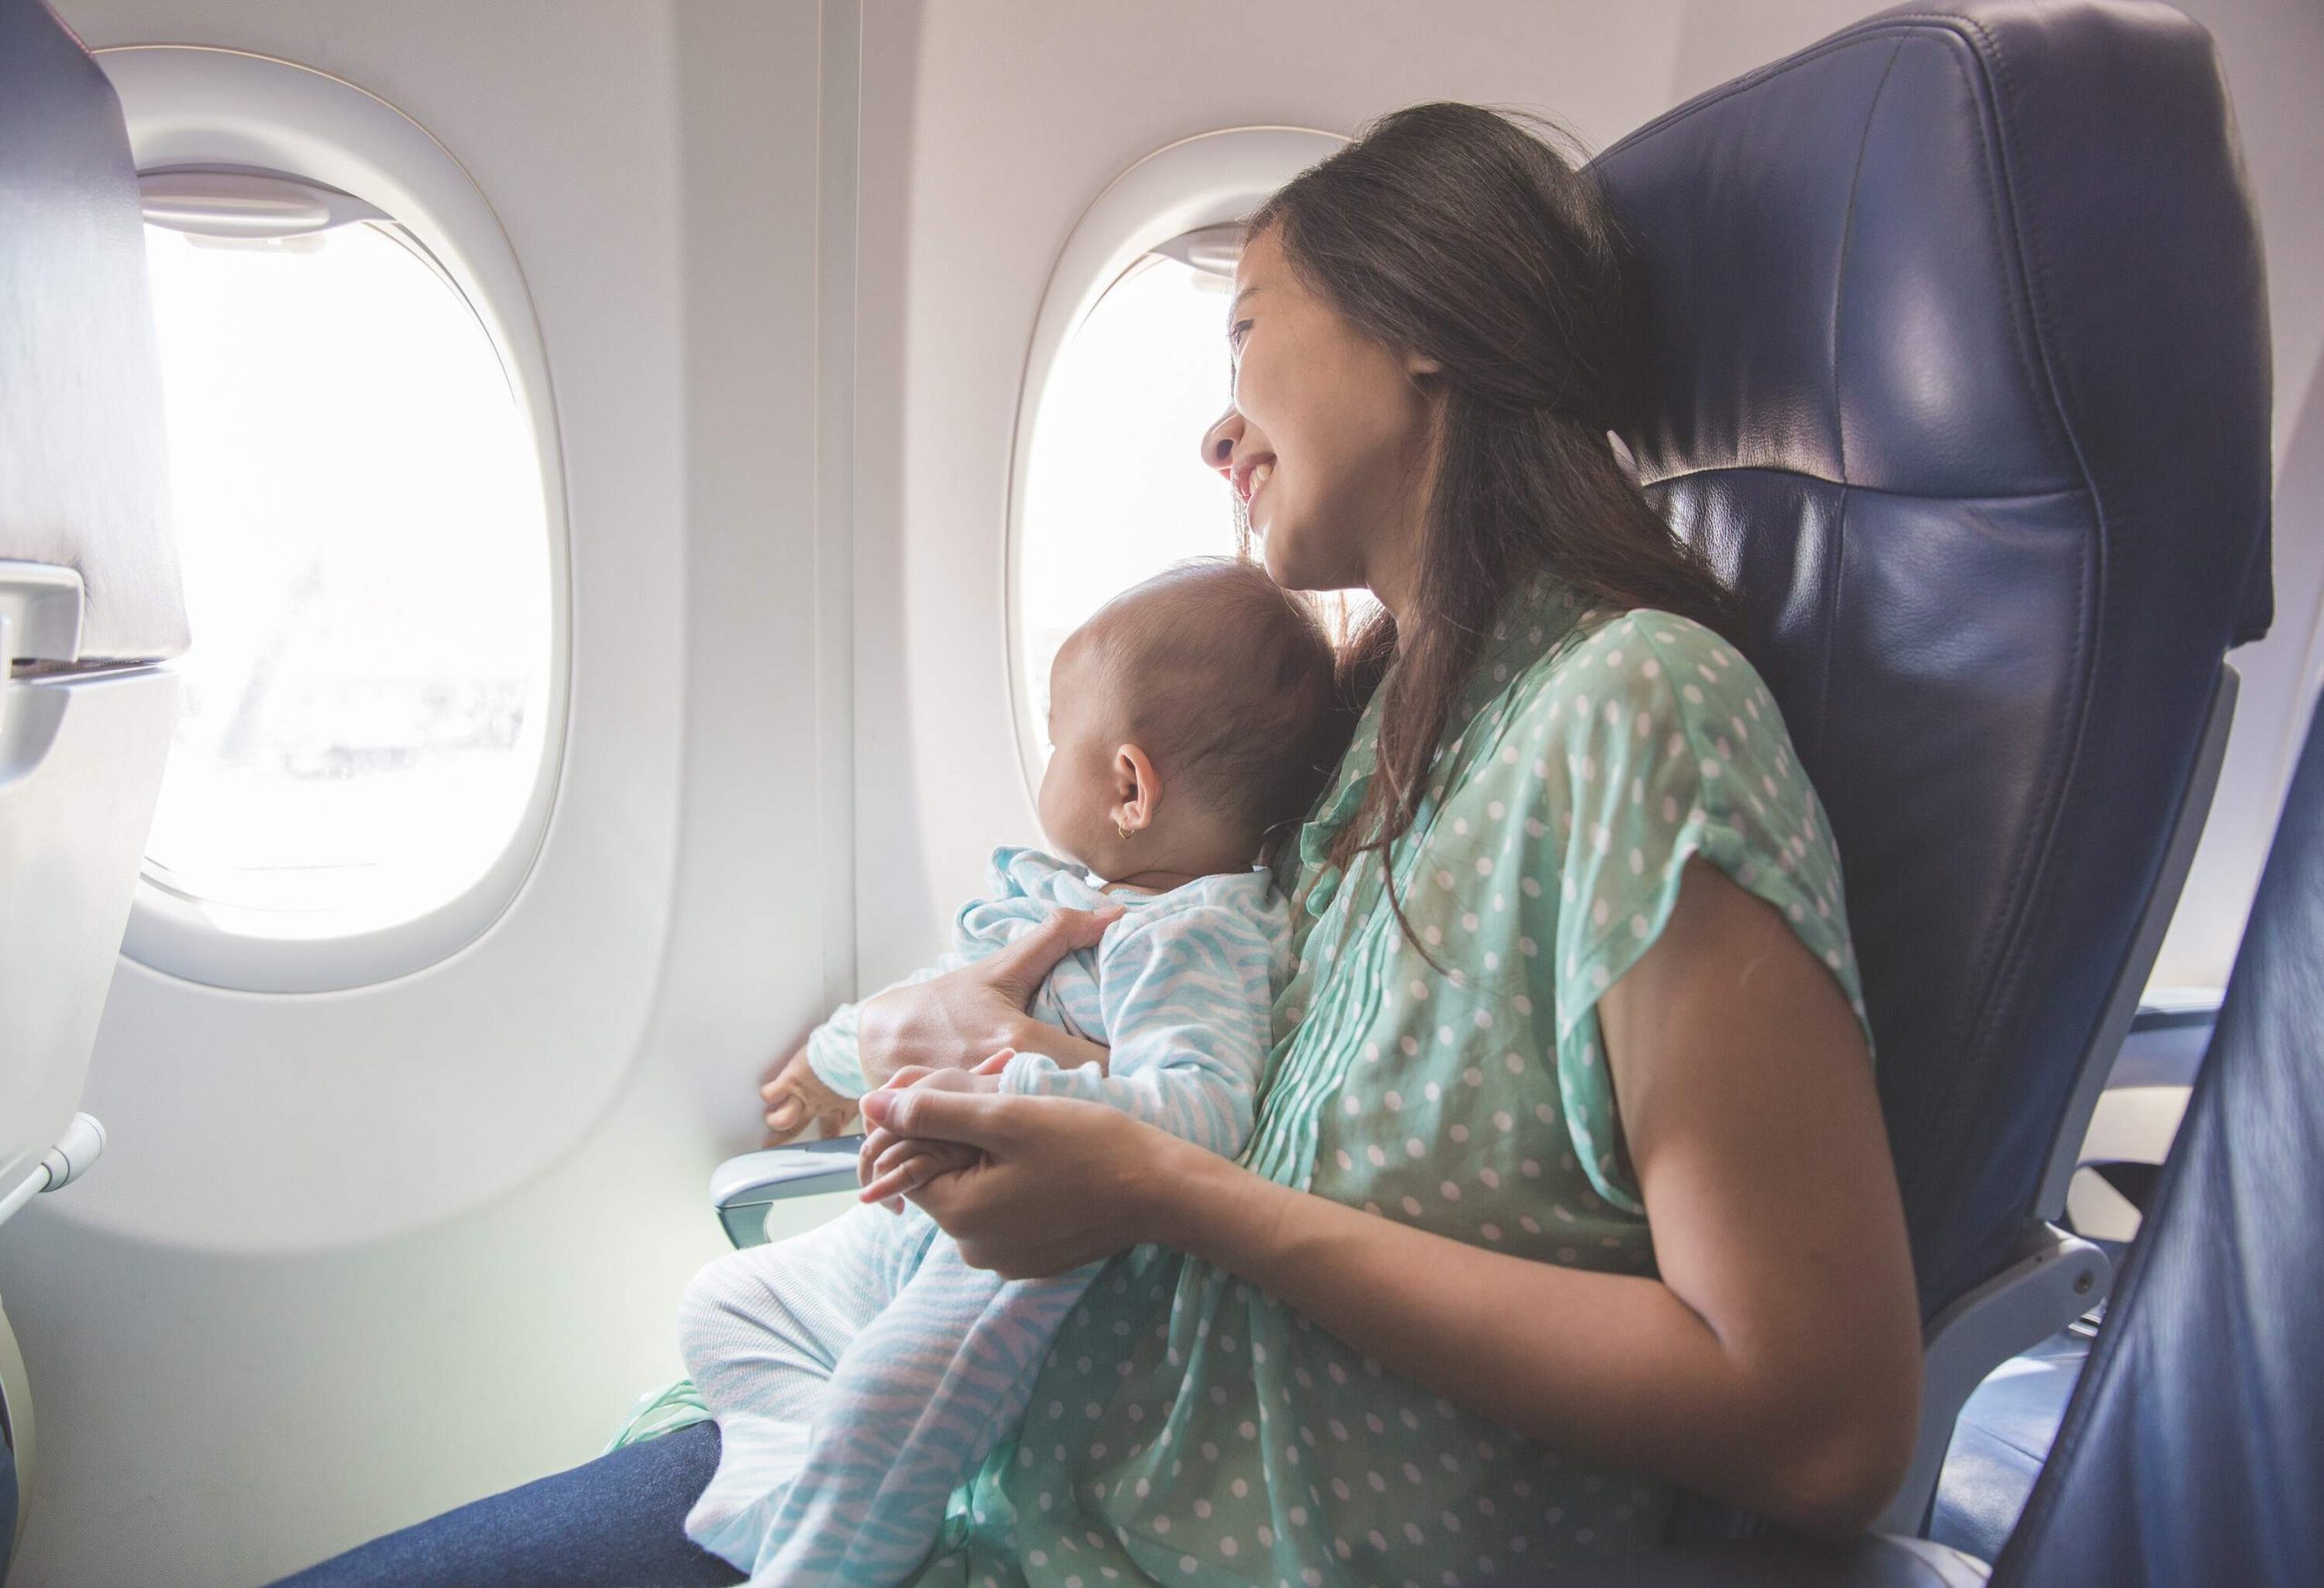 Bí kíp chọn chỗ ngồi "chuẩn chỉnh" cho em bé trên máy bay - 1